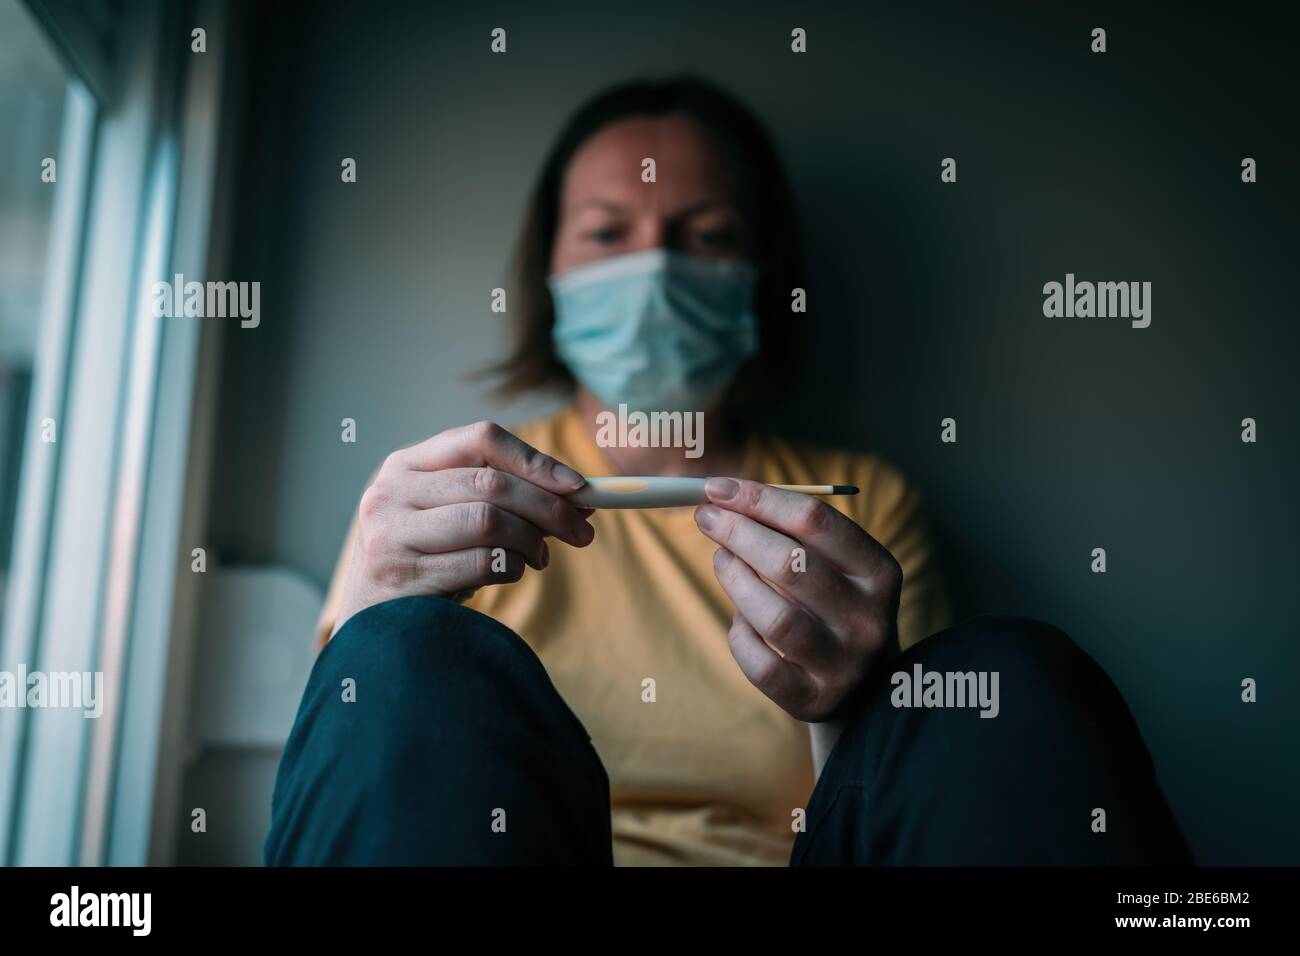 Femme en auto-isolation mesurant la température corporelle thermomètre numérique électronique. Femme avec masque respiratoire protecteur du visage, fcu sélectif Banque D'Images